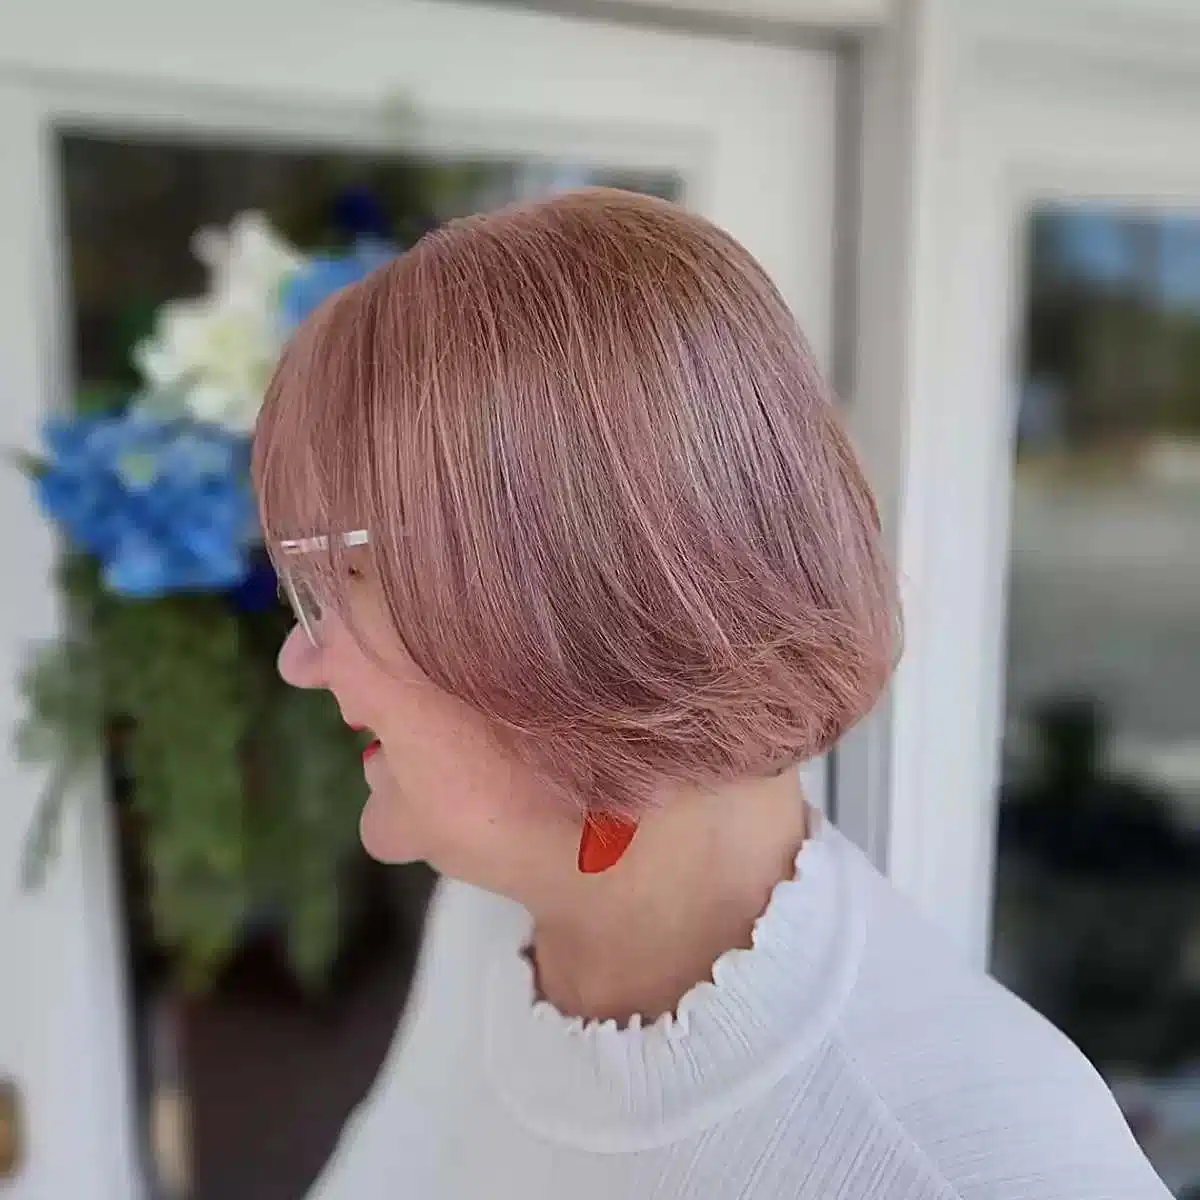 Женщина со стрижкой боб с розовым оттенком на тонких волосах